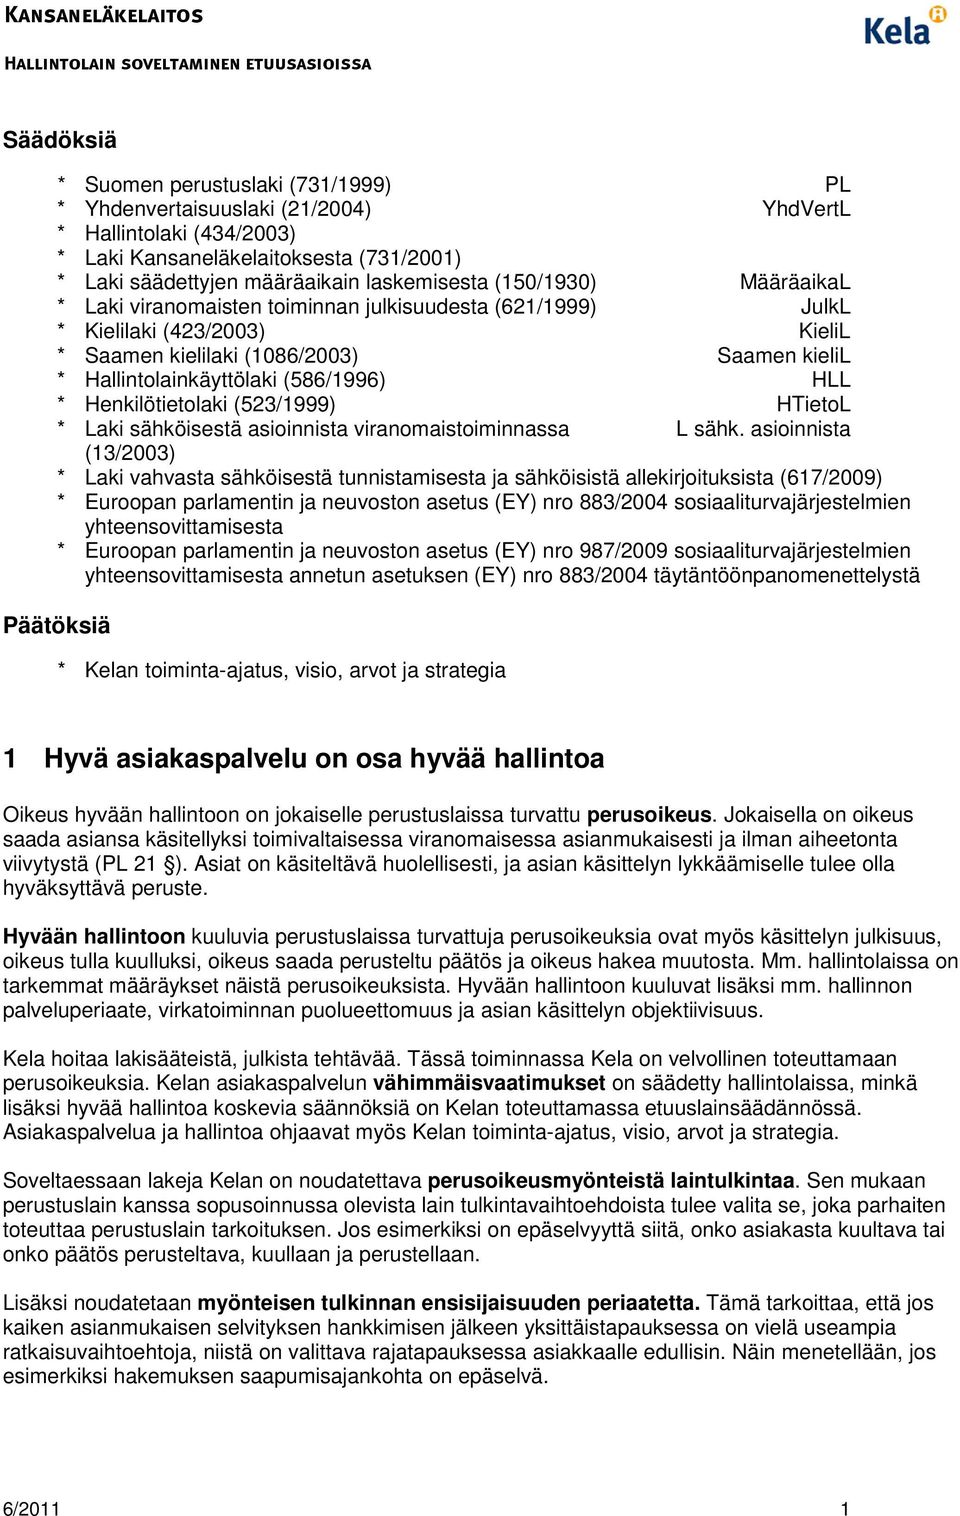 * Henkilötietolaki (523/1999) HTietoL * Laki sähköisestä asioinnista viranomaistoiminnassa L sähk.